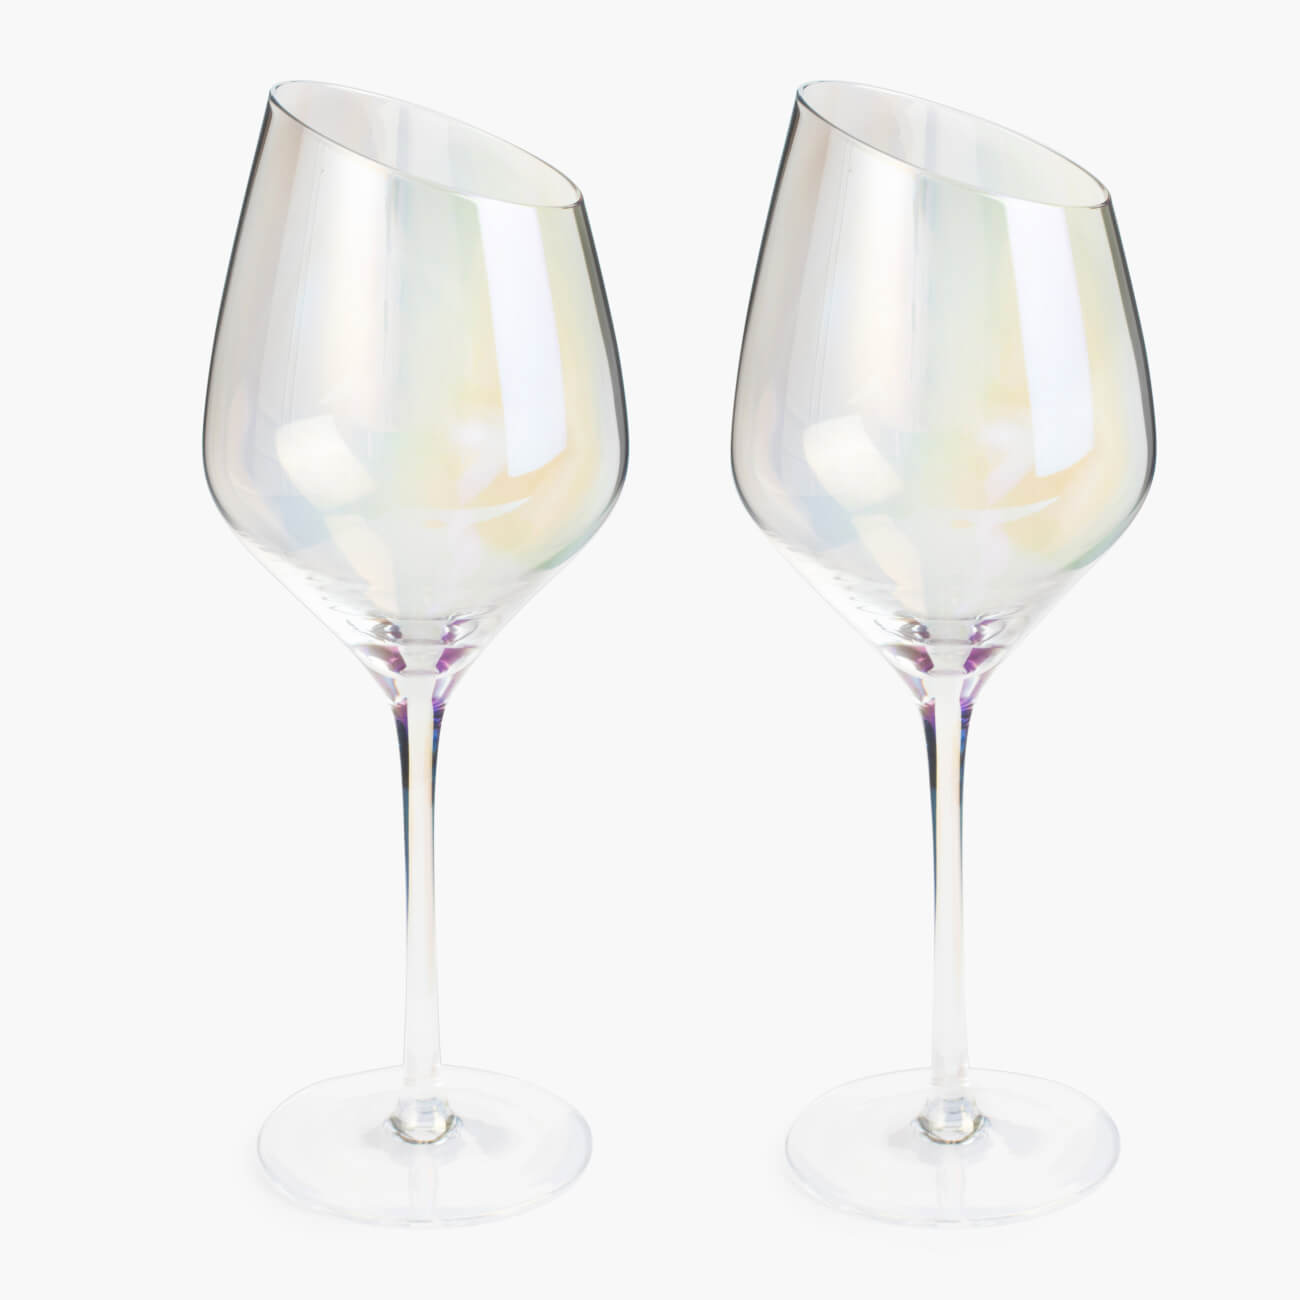 Бокал для белого вина, 460 мл, 4 шт, стекло, перламутр, Charm L polar бокалы для белого вина tescoma